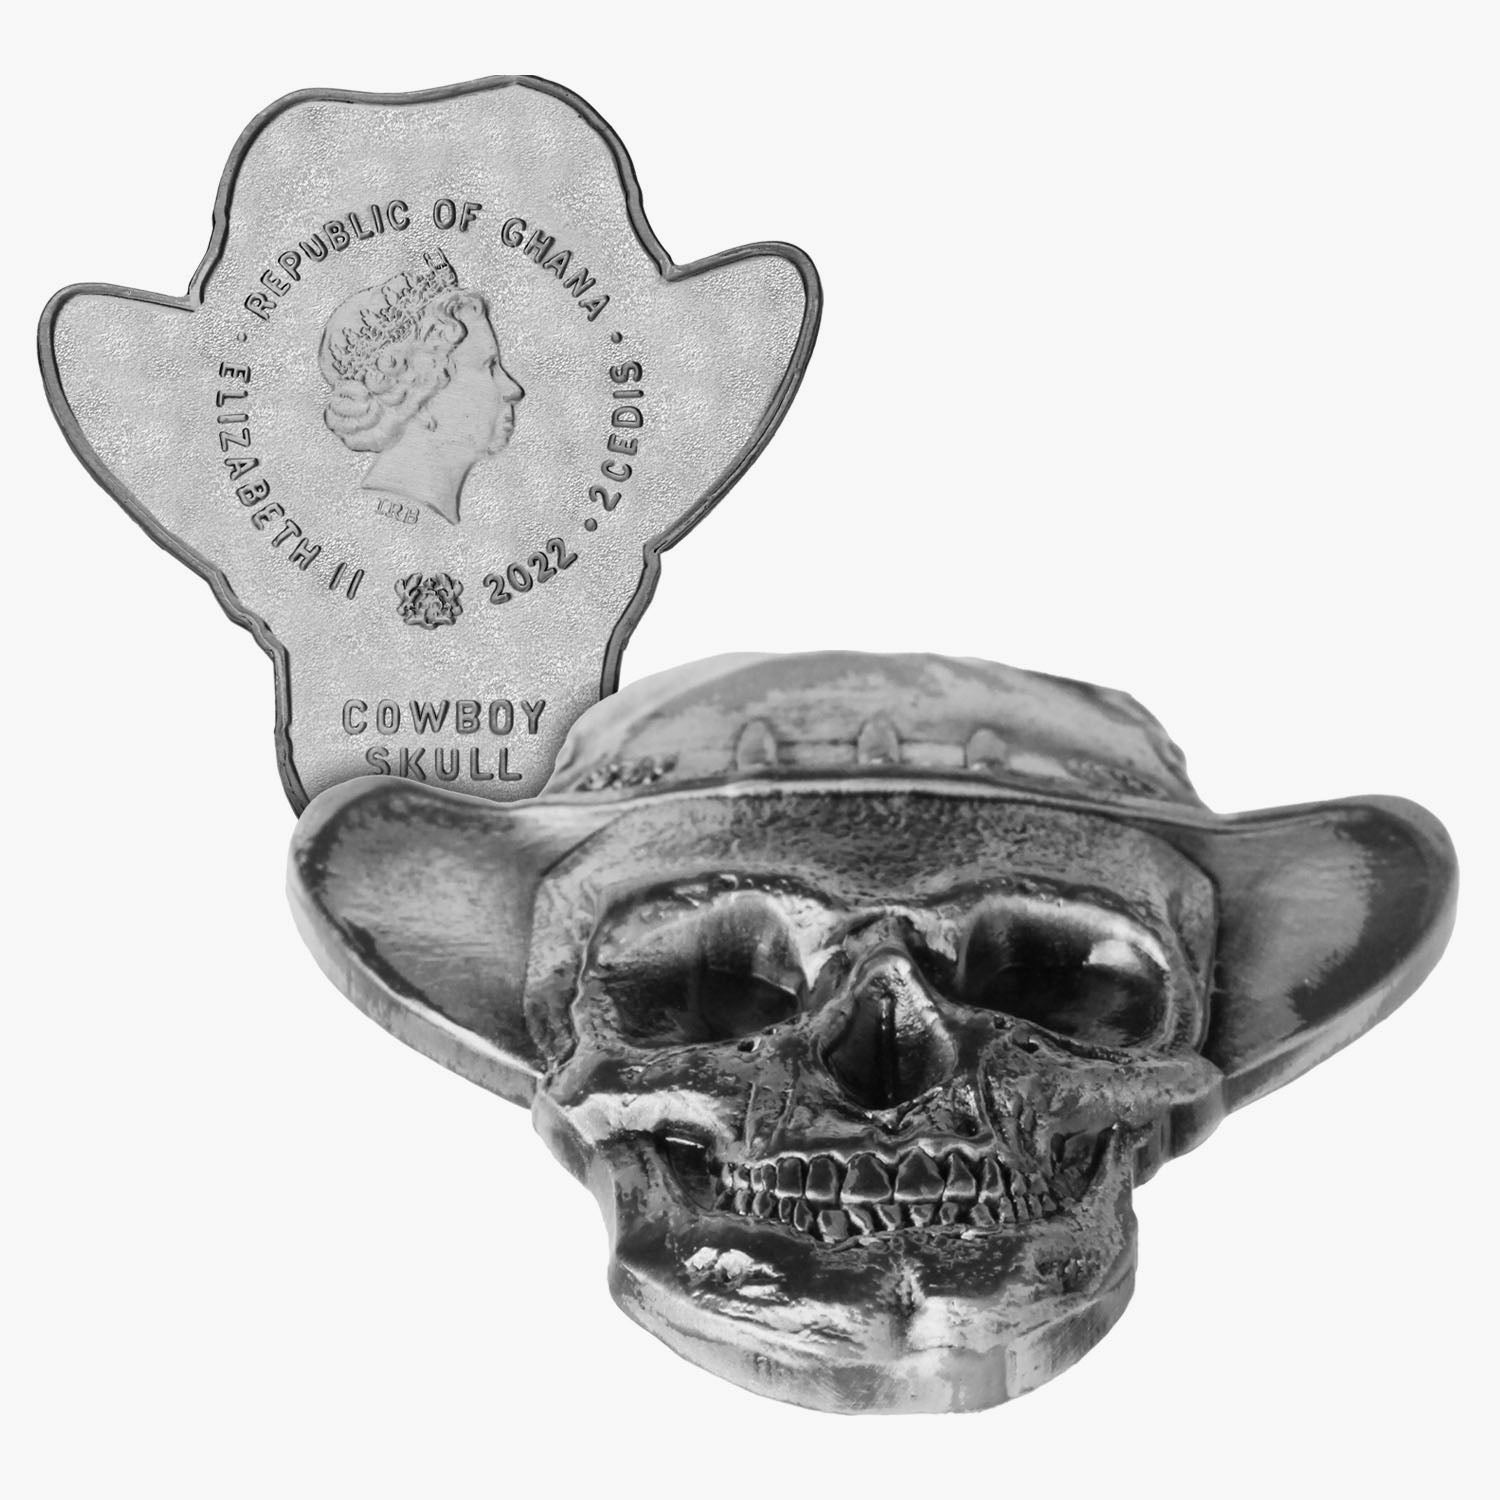 Cowboy Skull Shaped Coin